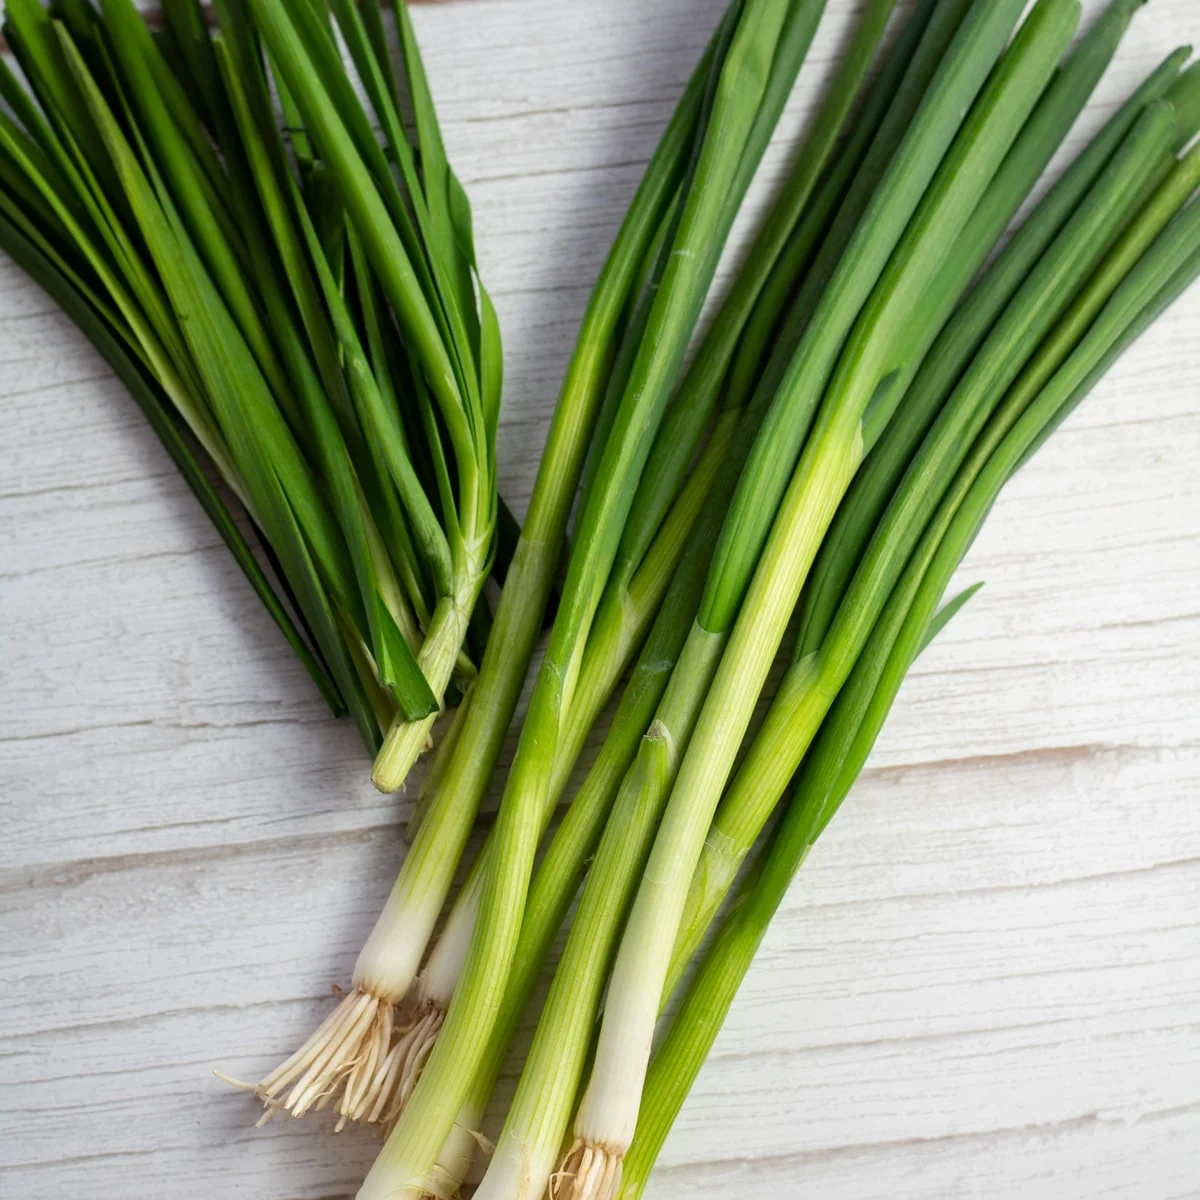 green onions vs chives sq